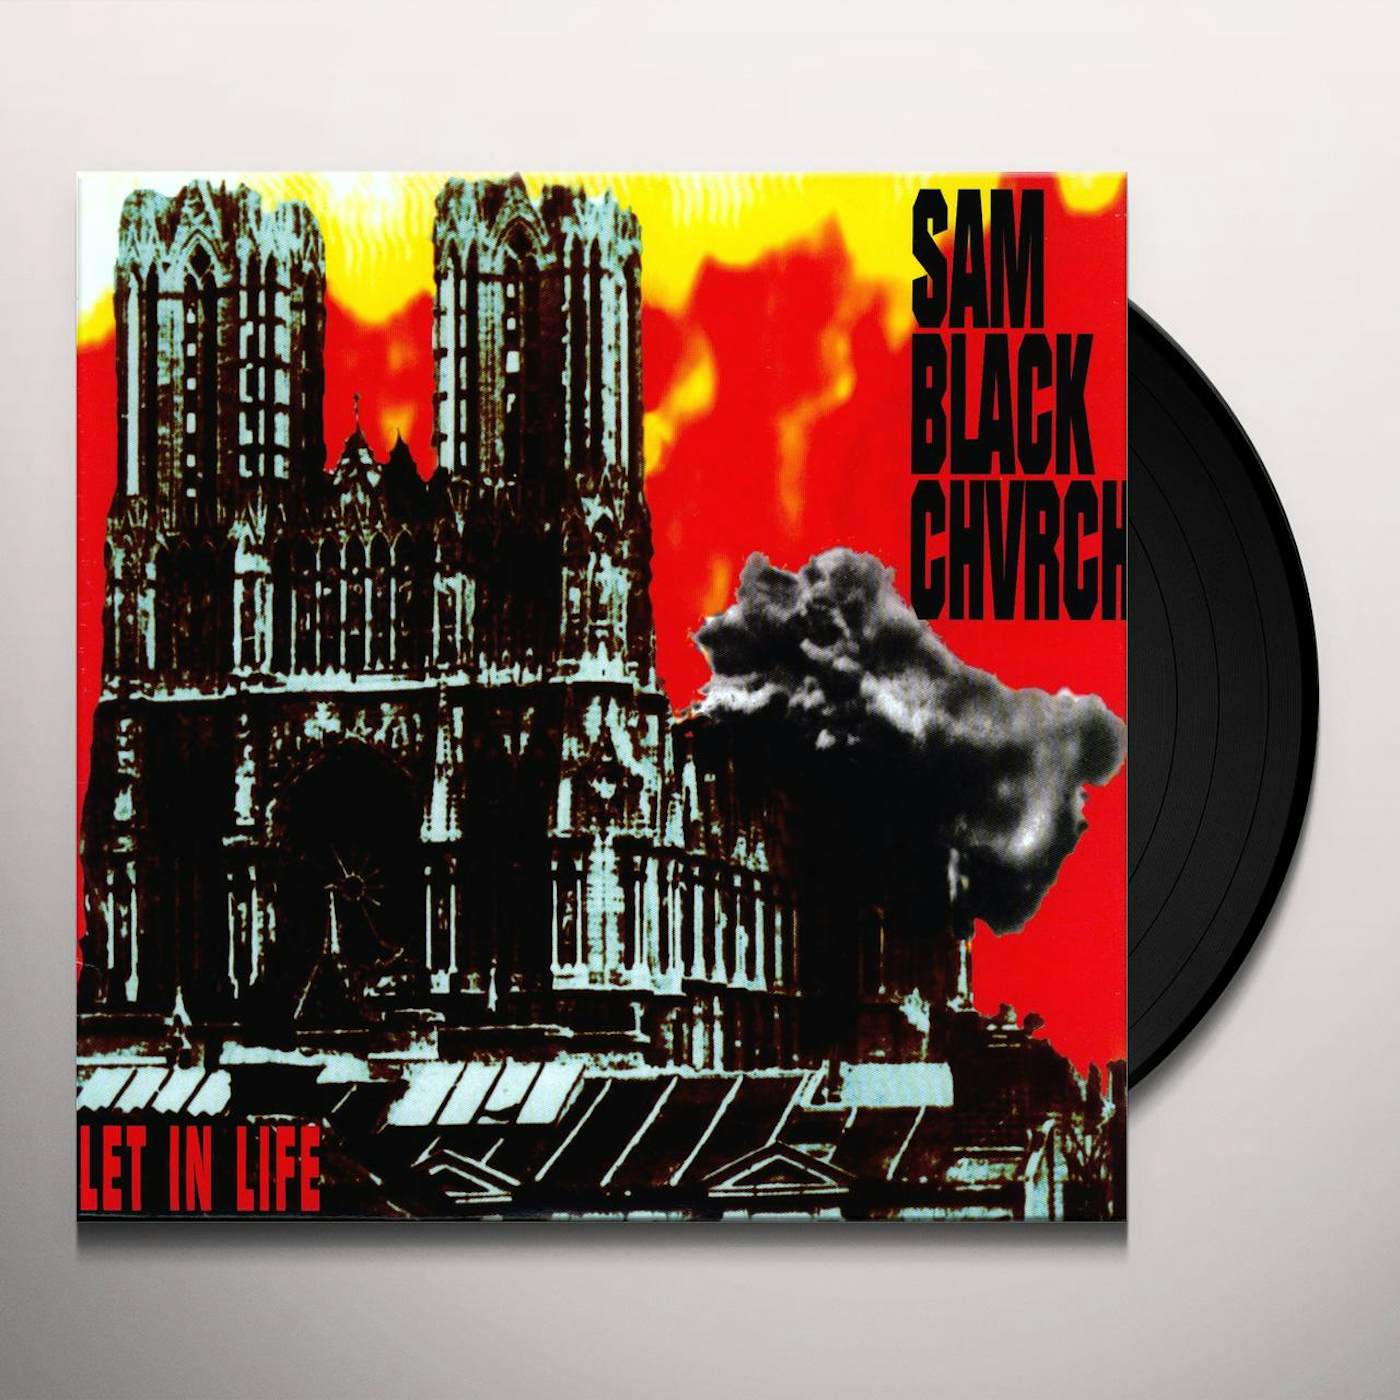 Sam Black Church Let In Life Vinyl Record